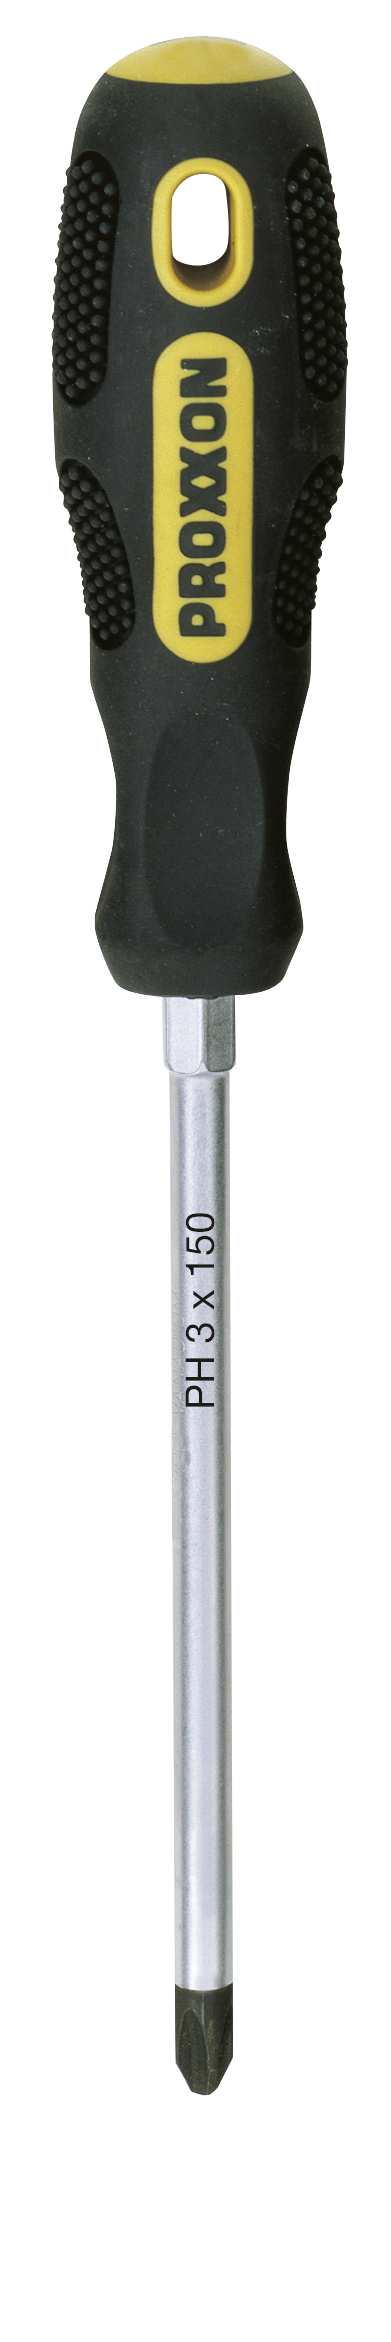 Tournevis FLEX-DOT cruciforme PH 3 x 150 PROXXON